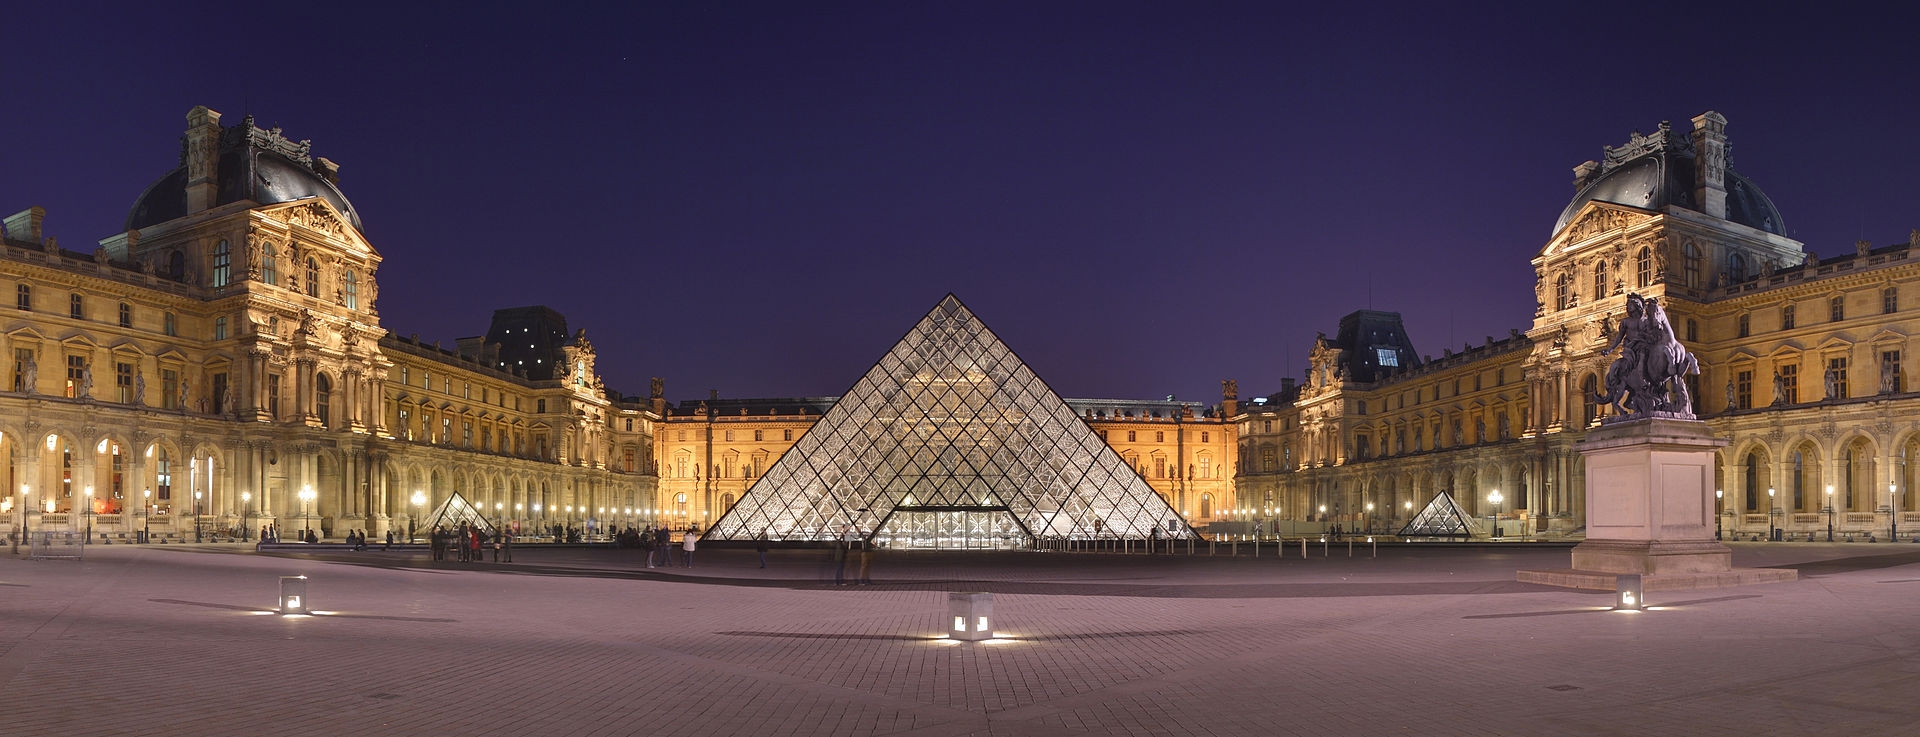 巴黎羅浮宮前的玻璃金字塔原貌。圖取自Wikipedia。.jpg